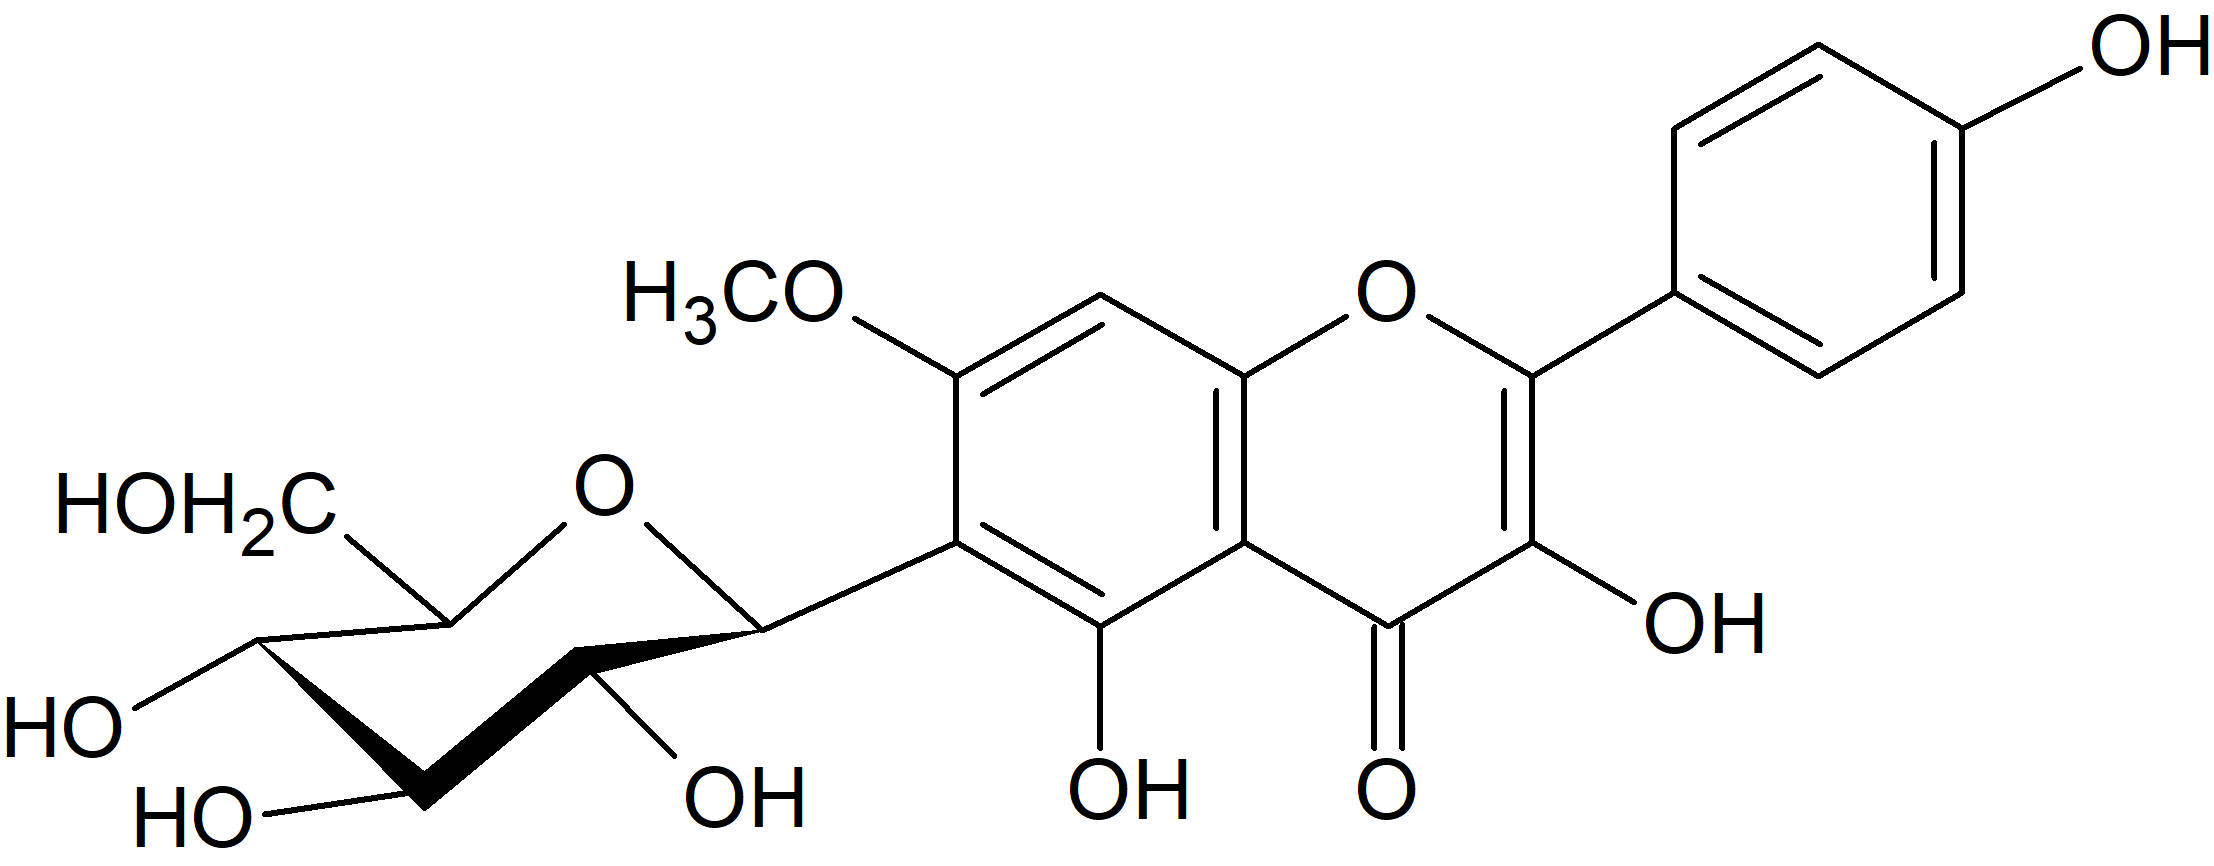 3,5,4'-Trihydroxy-7-methoxyflavone 6-C-glucopyranoside